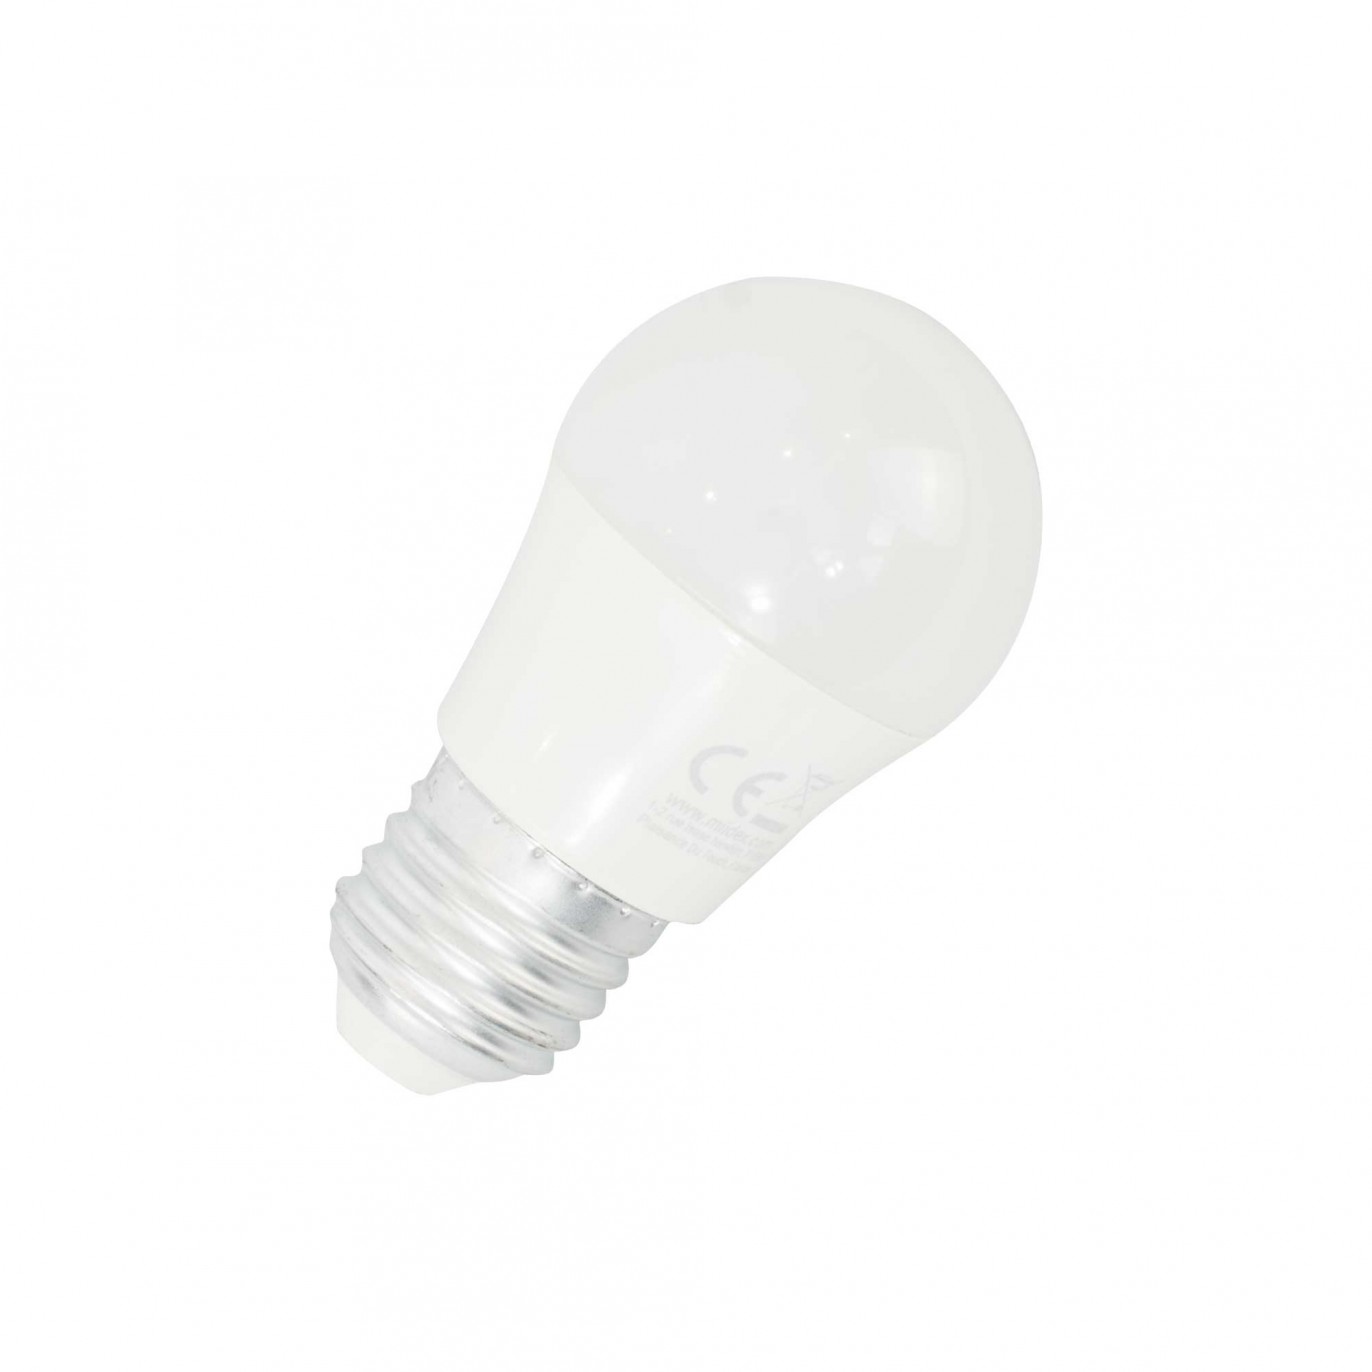 136688 Variateur à coupure de phase Adapté pour ampoule: Lampe à économie  dénergie, Ampoule électrique, Lampe halogène